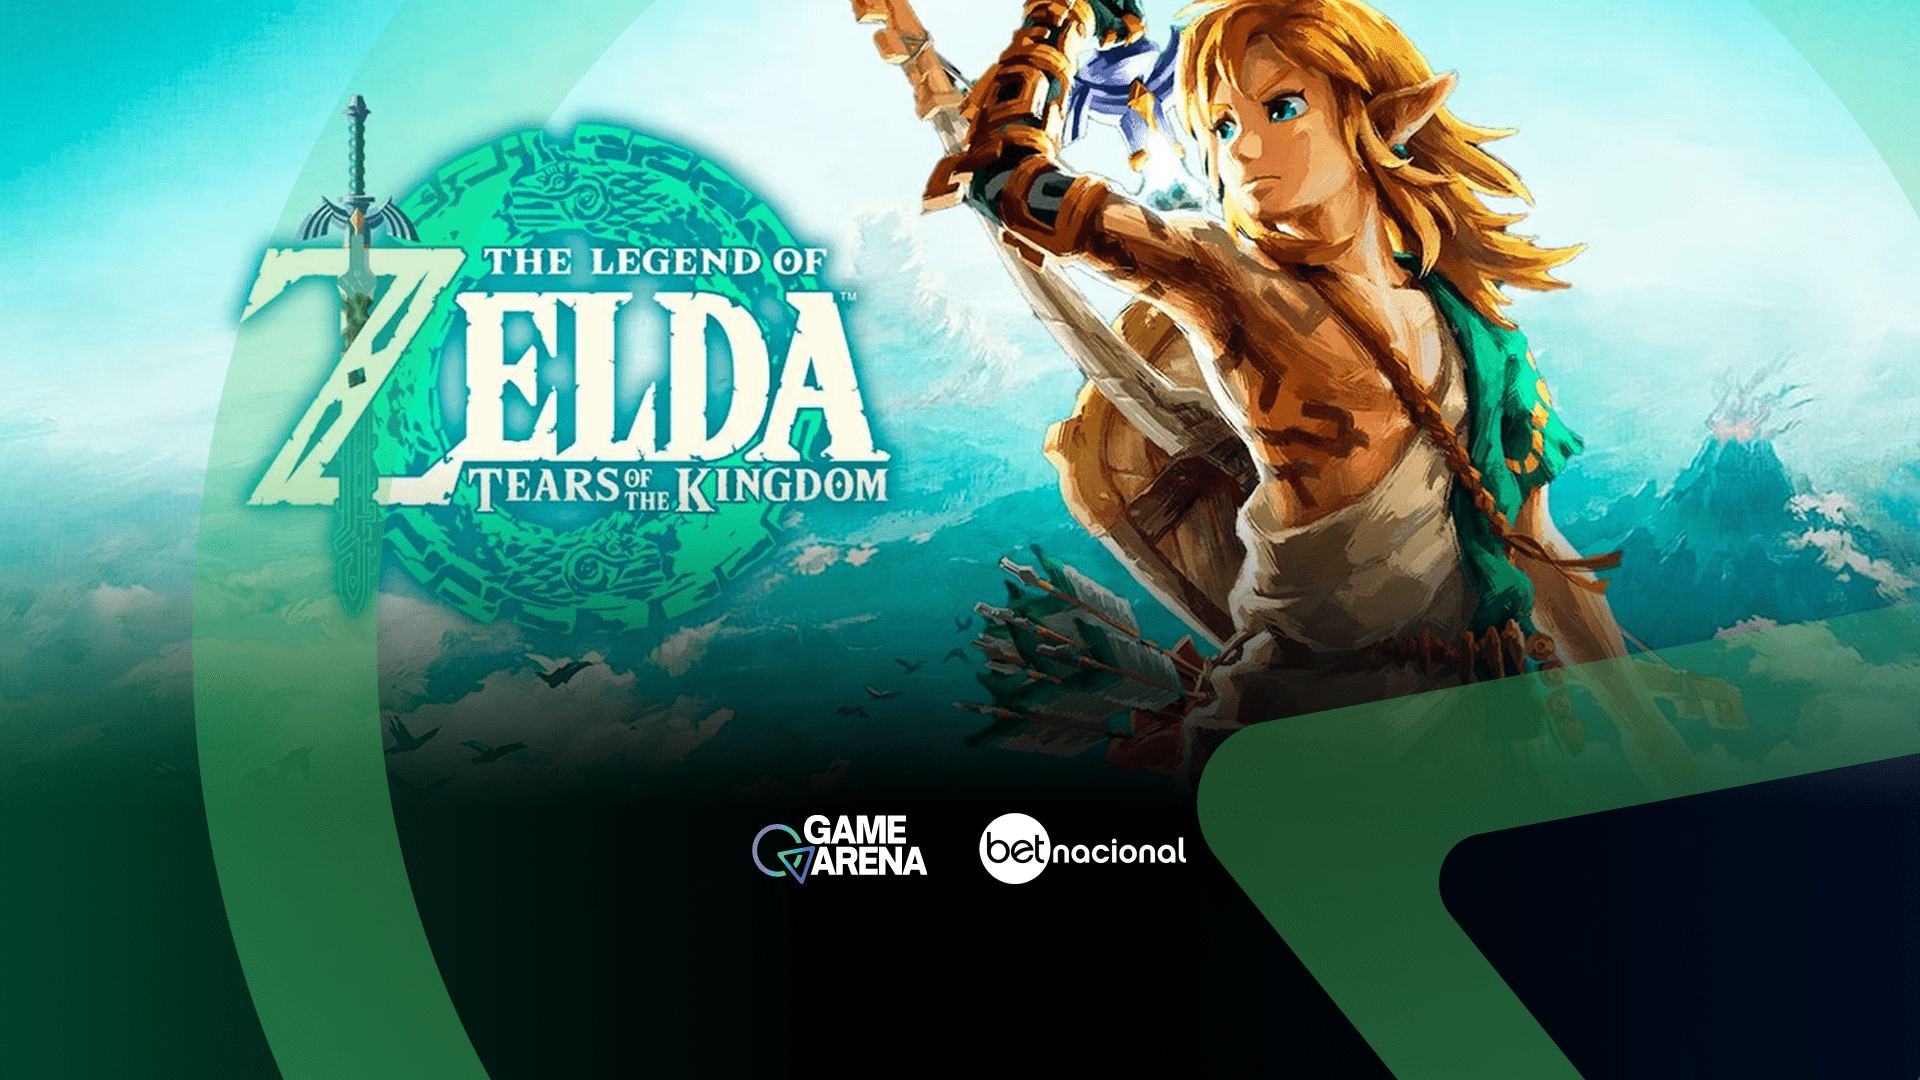 Zelda: Tears of the Kingdom é o maior lançamento da franquia no